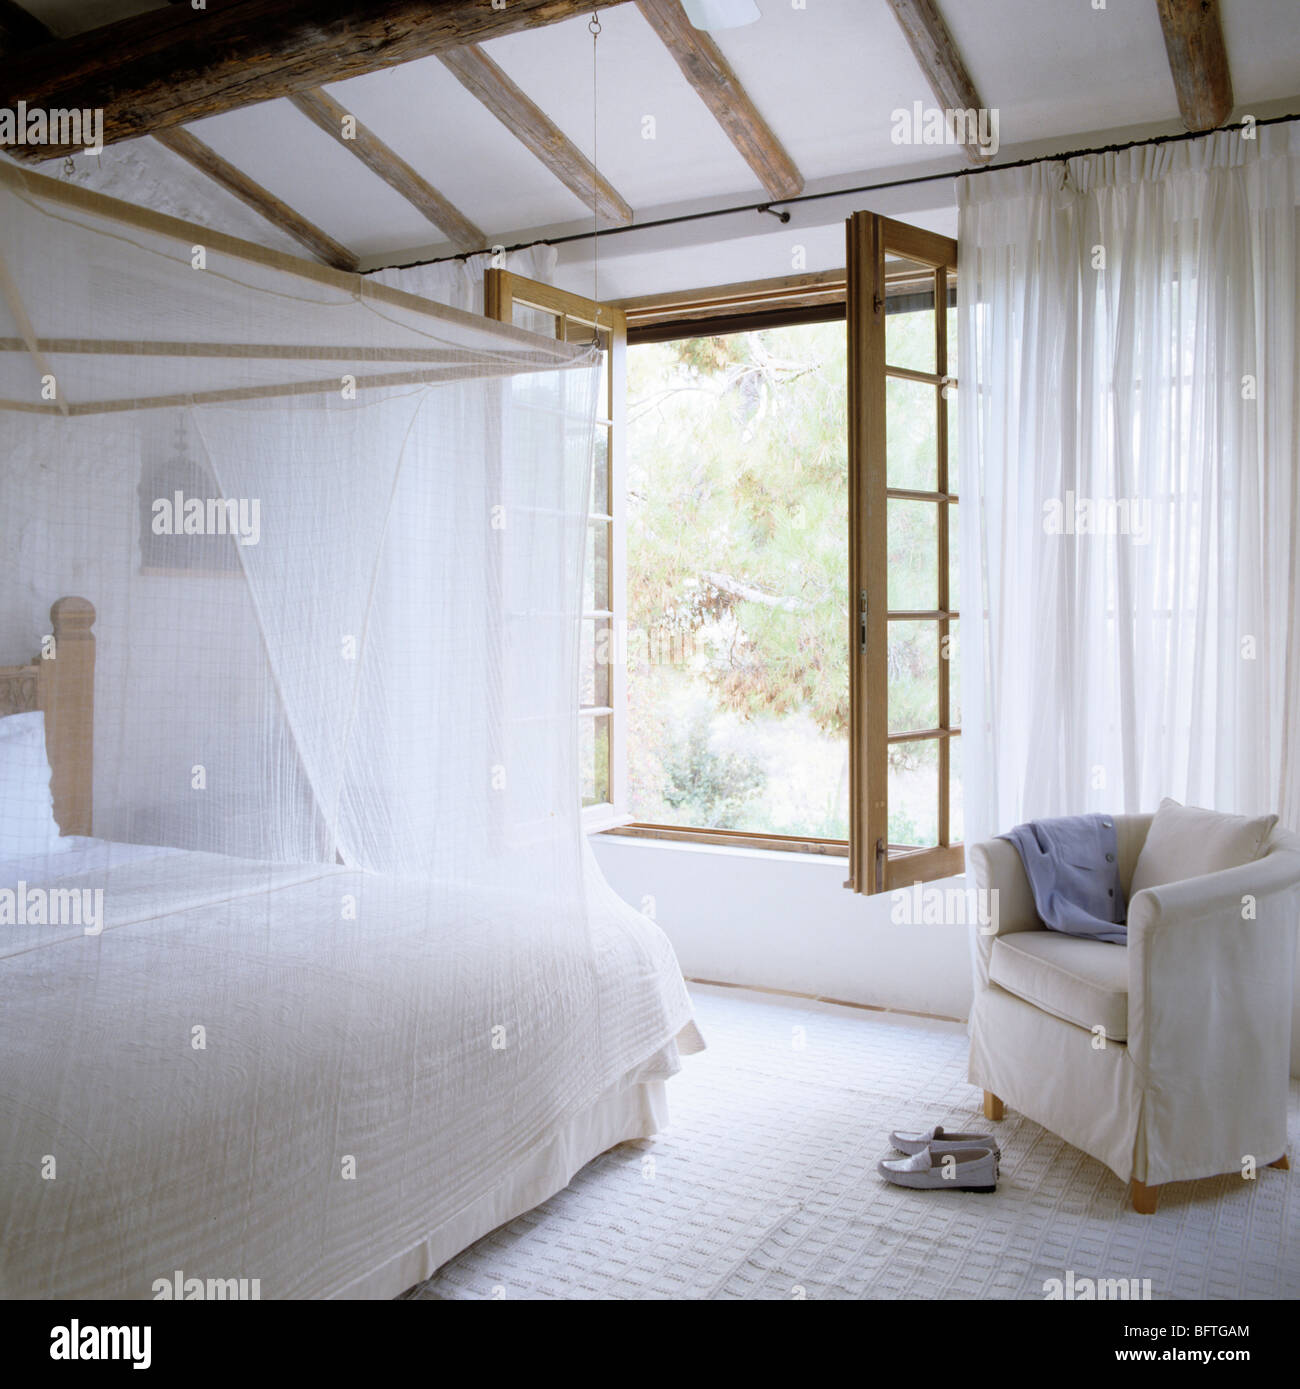 Chambre avec fenêtres ouvertes, des rideaux blancs et un couvre-lit de mousseline Banque D'Images